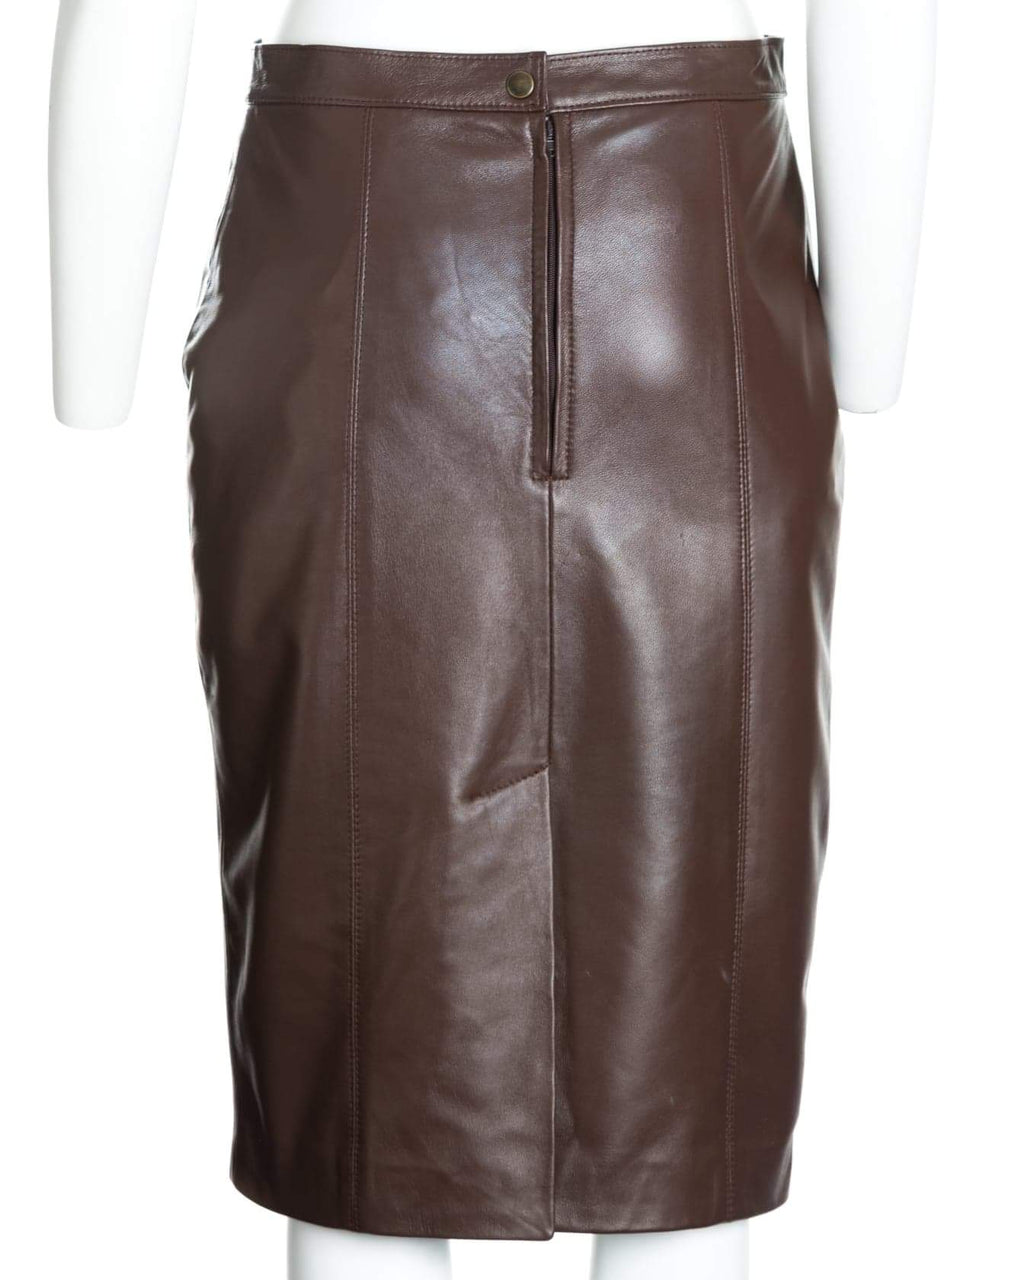 Ladies 25" Leather Skirt